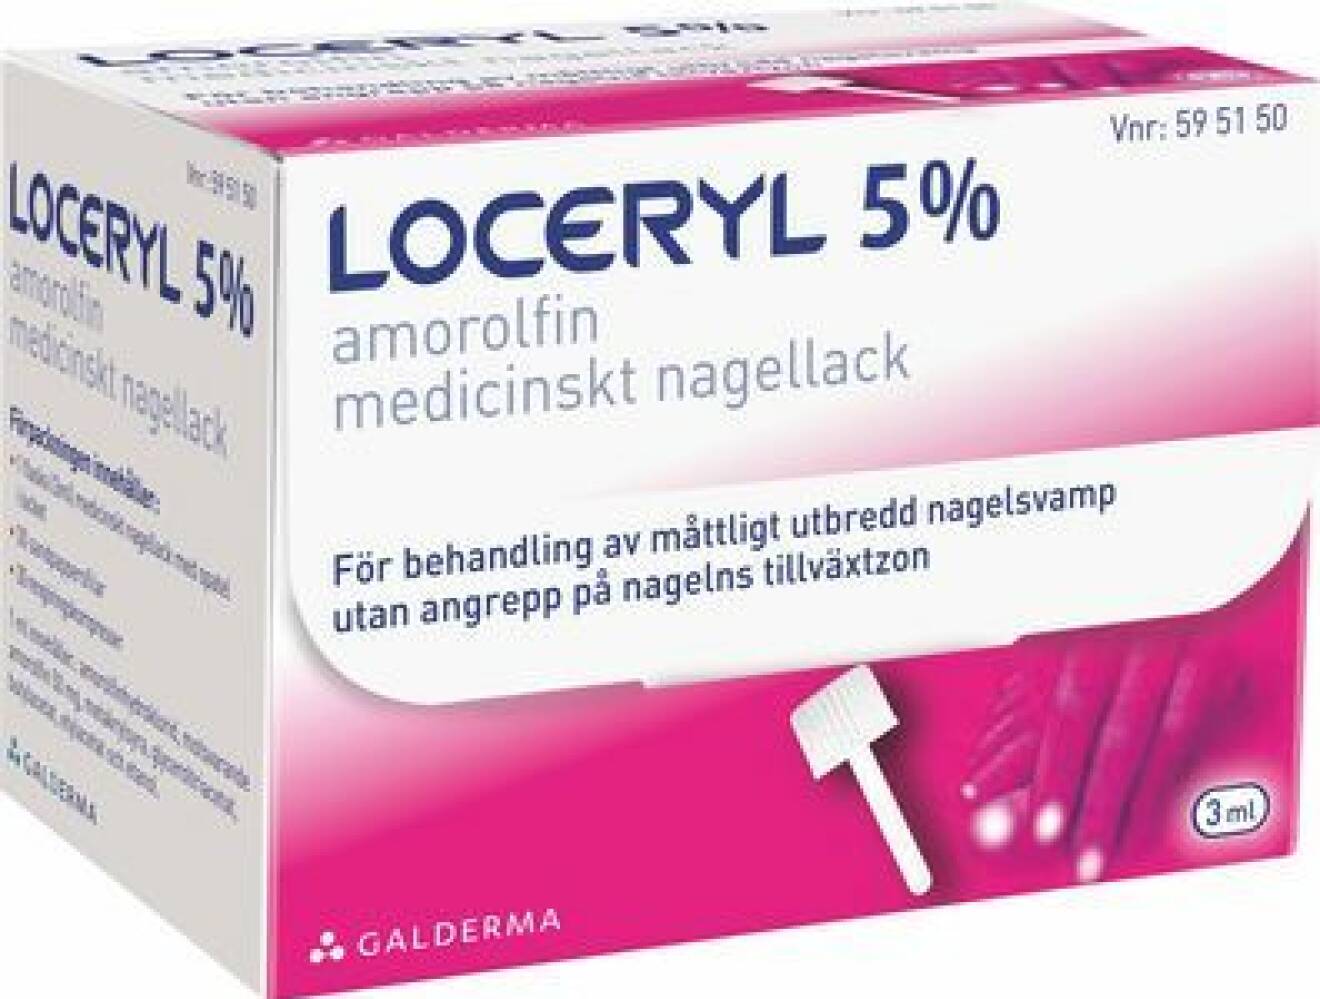 Amorolfin medicinskt nagellack från Loceryl